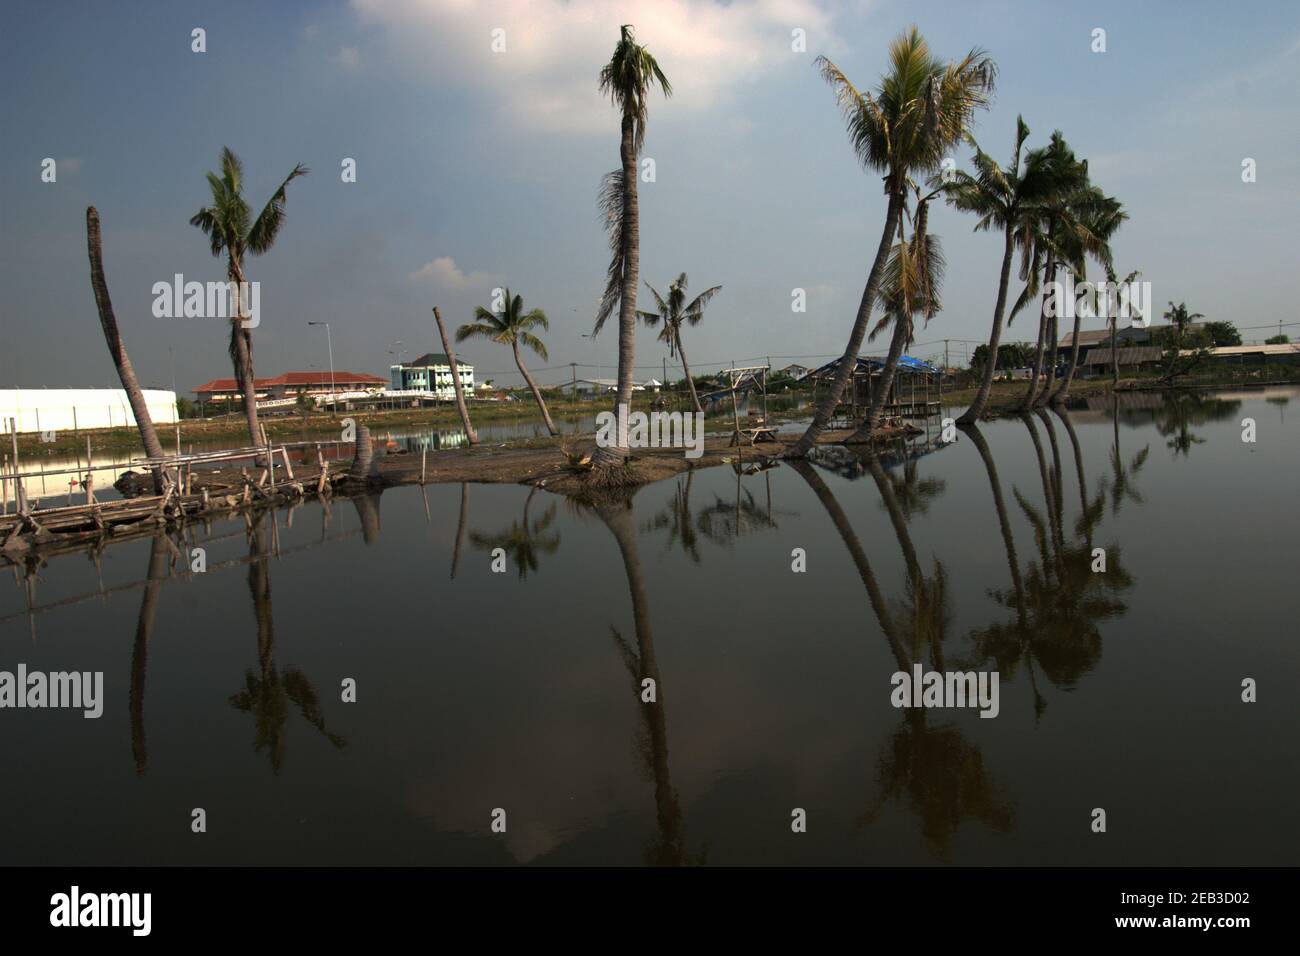 Des cocotiers sur une zone côtière inondée près du village de Kamal Muara, avec le mur blanc du stade de football de Kamal Muara est vu en partie (à gauche) en arrière-plan. Banque D'Images